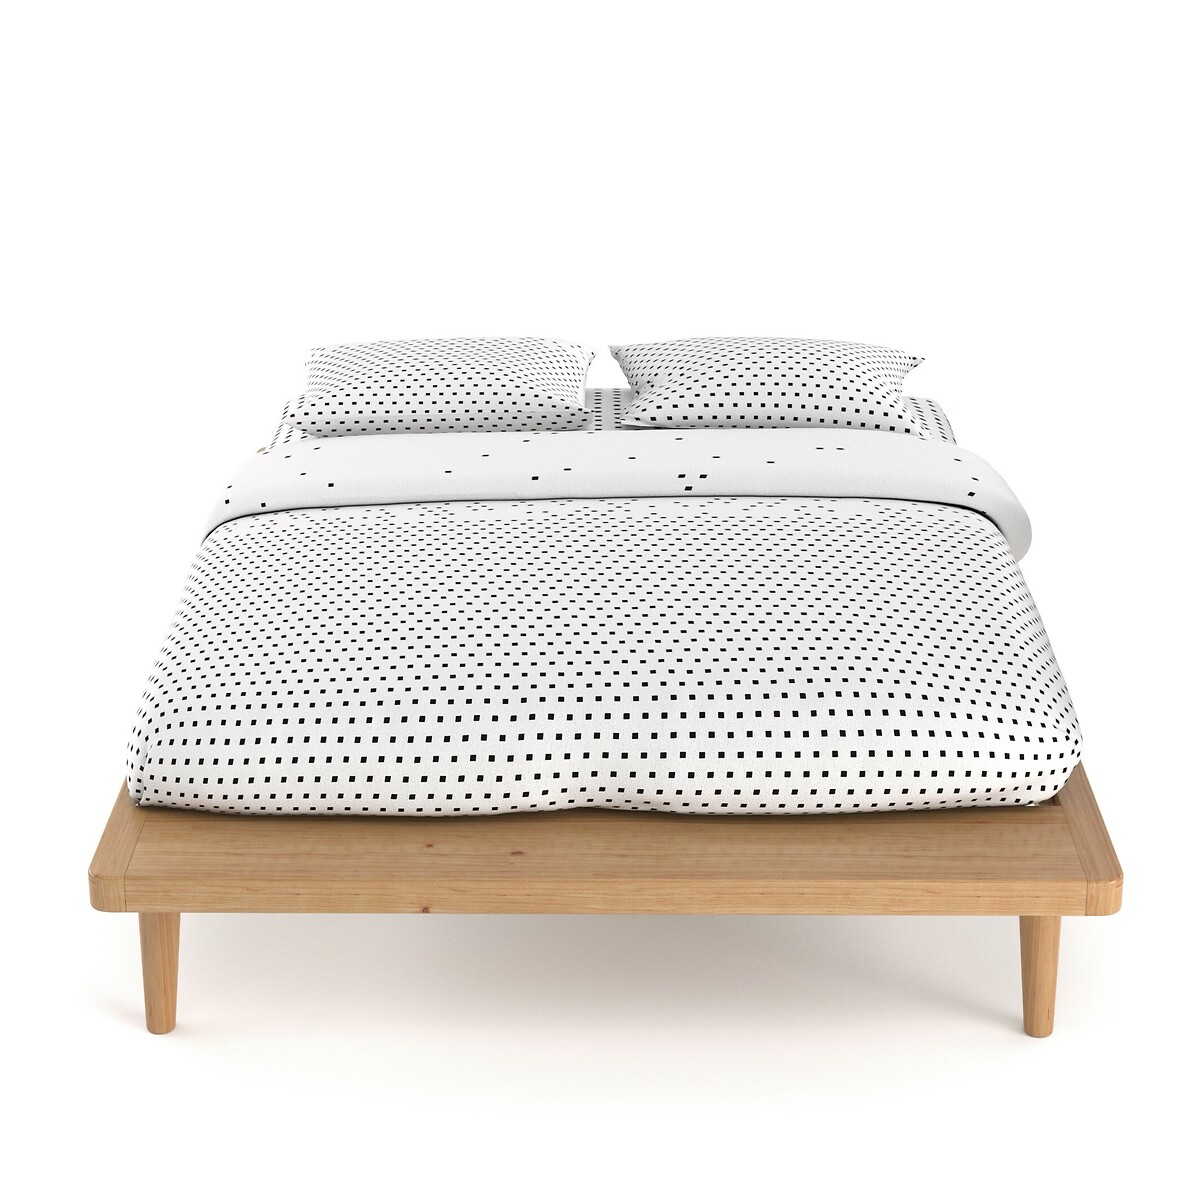 Кровать La Redoute С платформой из массива сосны  кроватное основание Jimi 140 x 190 см каштановый, размер 140 x 190 см - фото 2